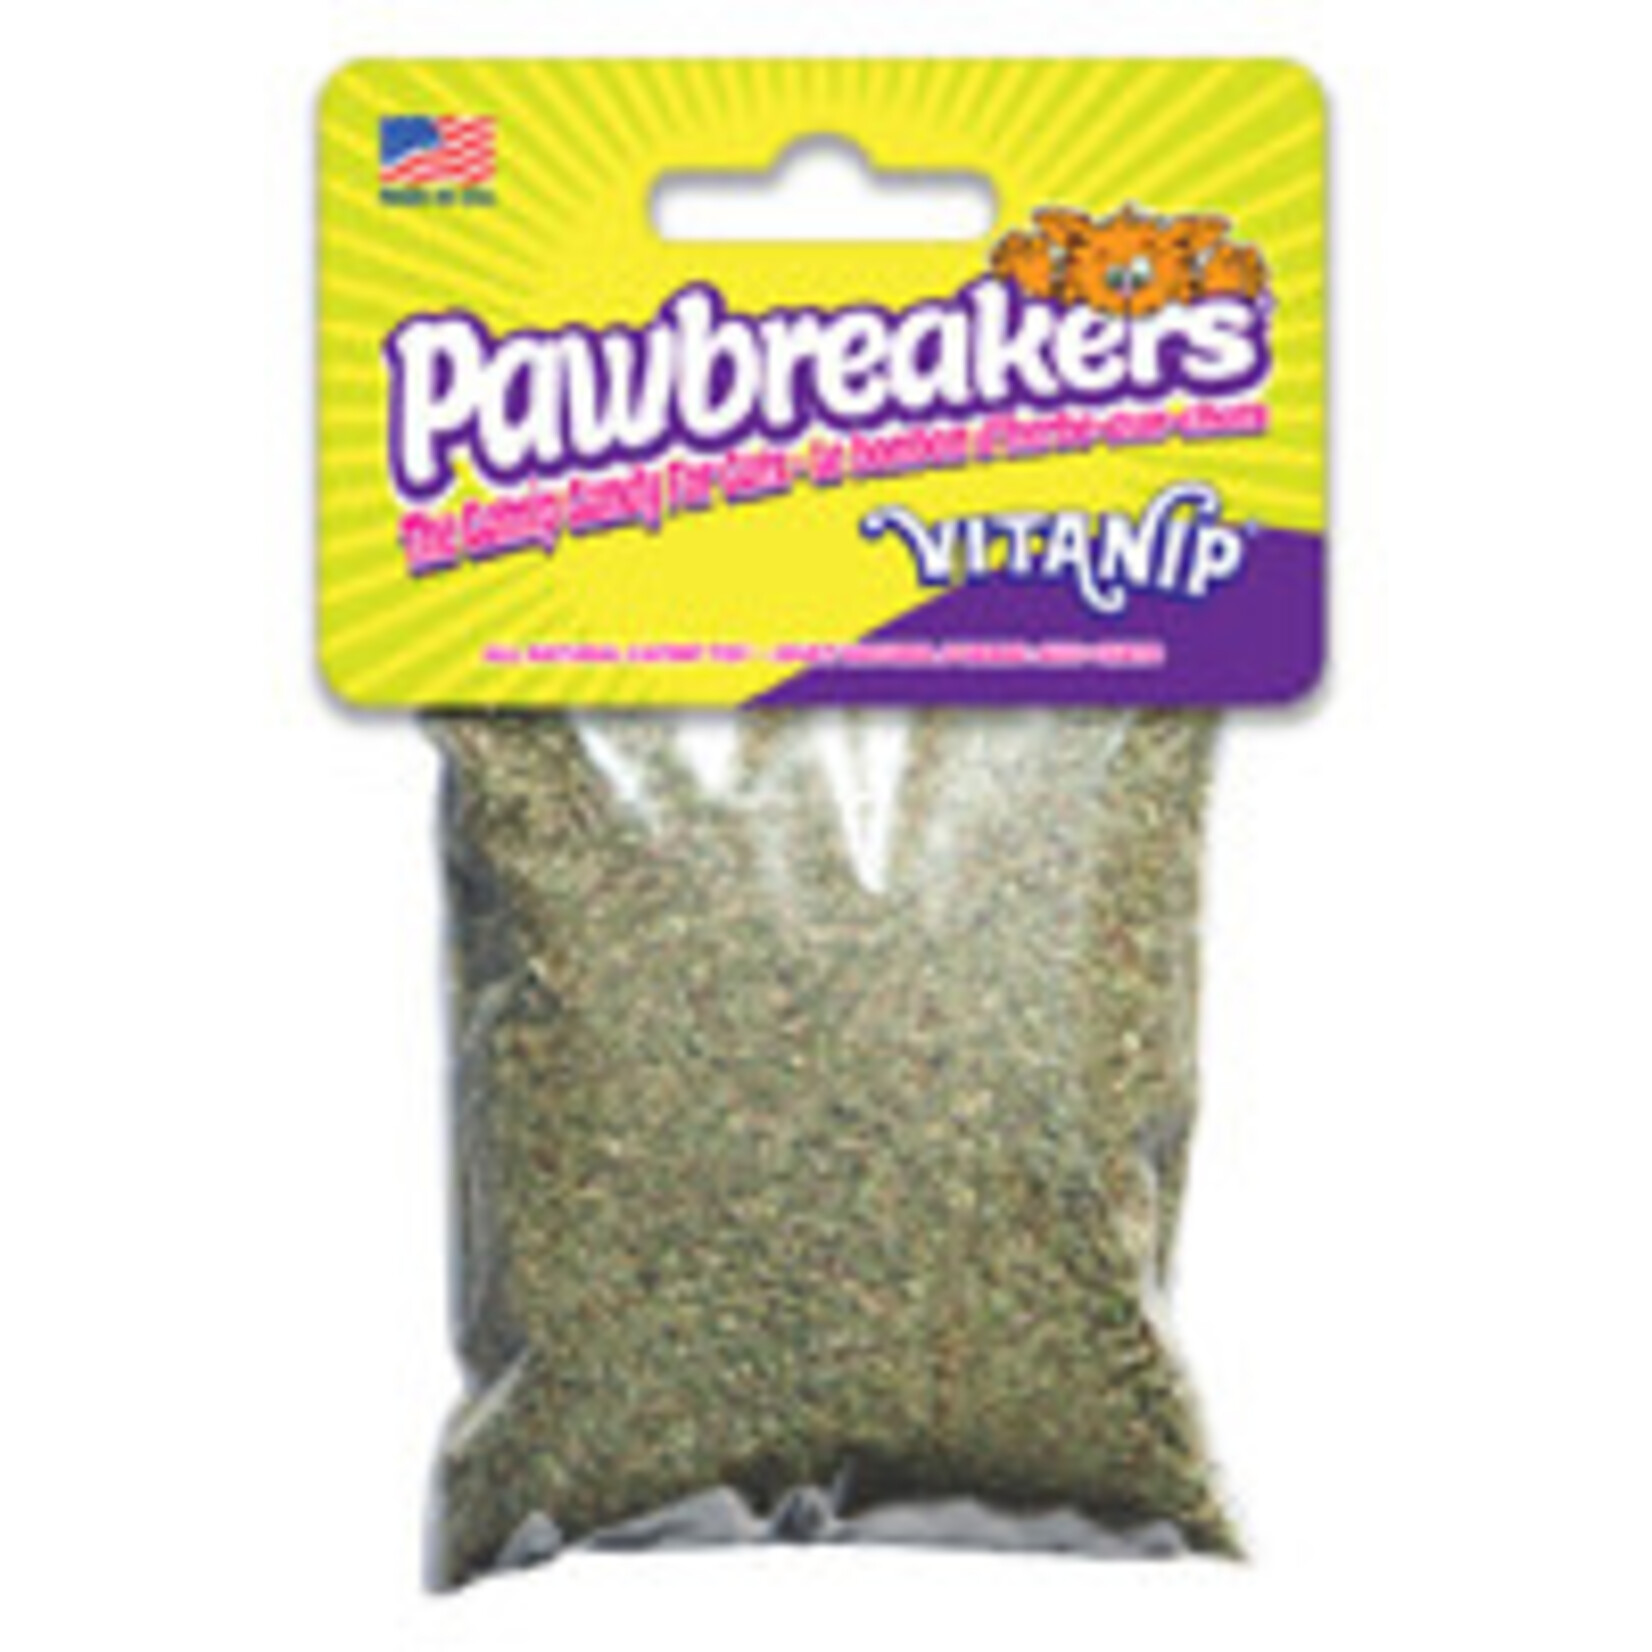 Pawbreakers Vitanip – 14 g